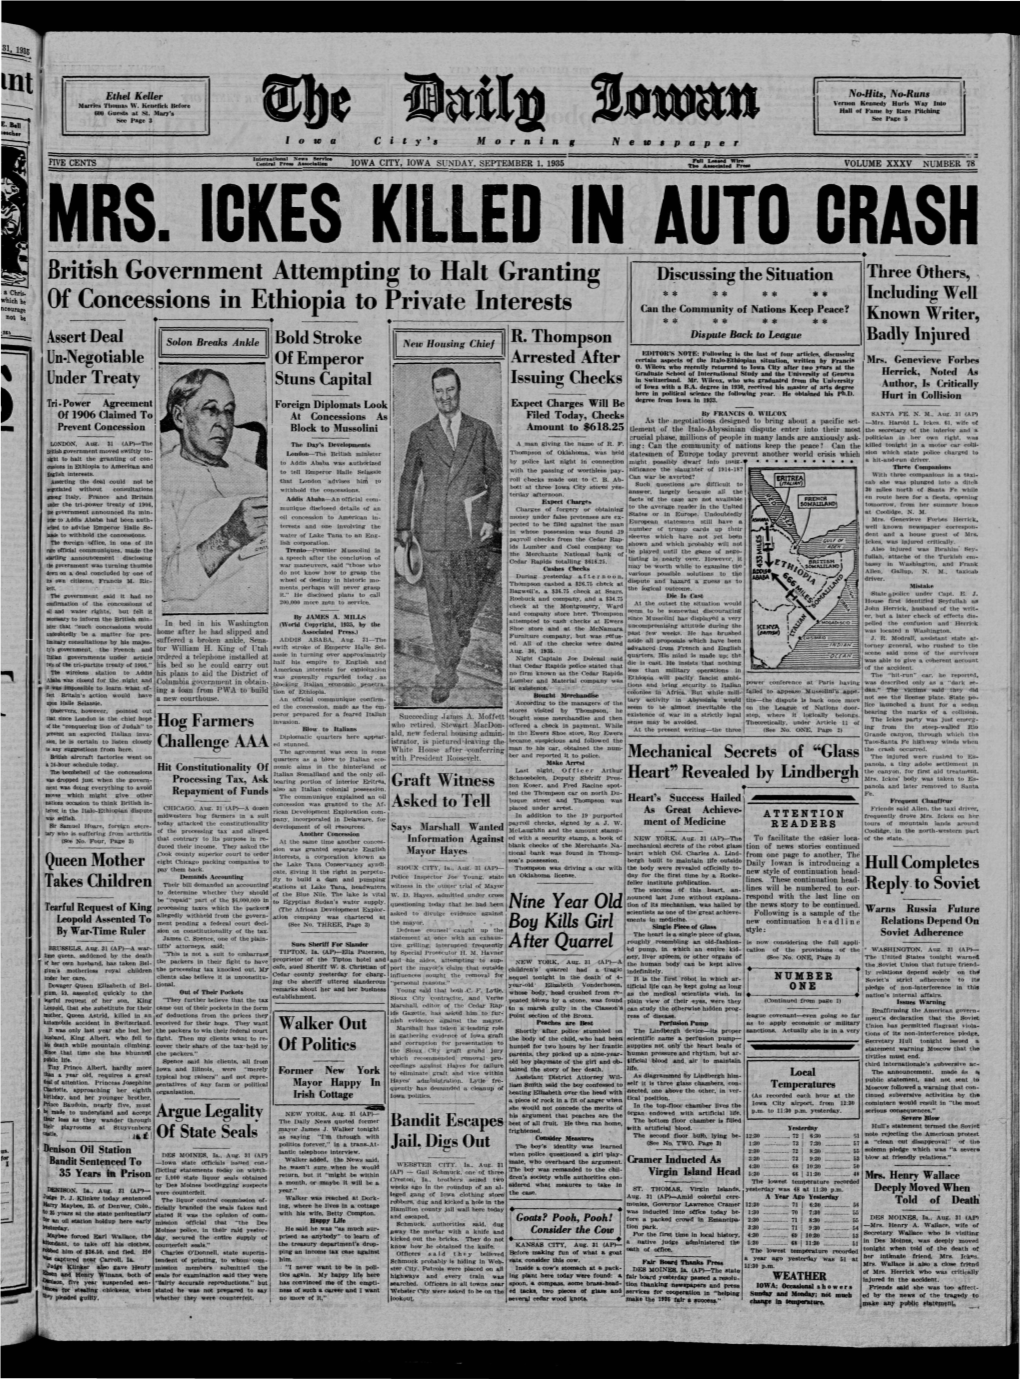 Daily Iowan (Iowa City, Iowa), 1935-09-01